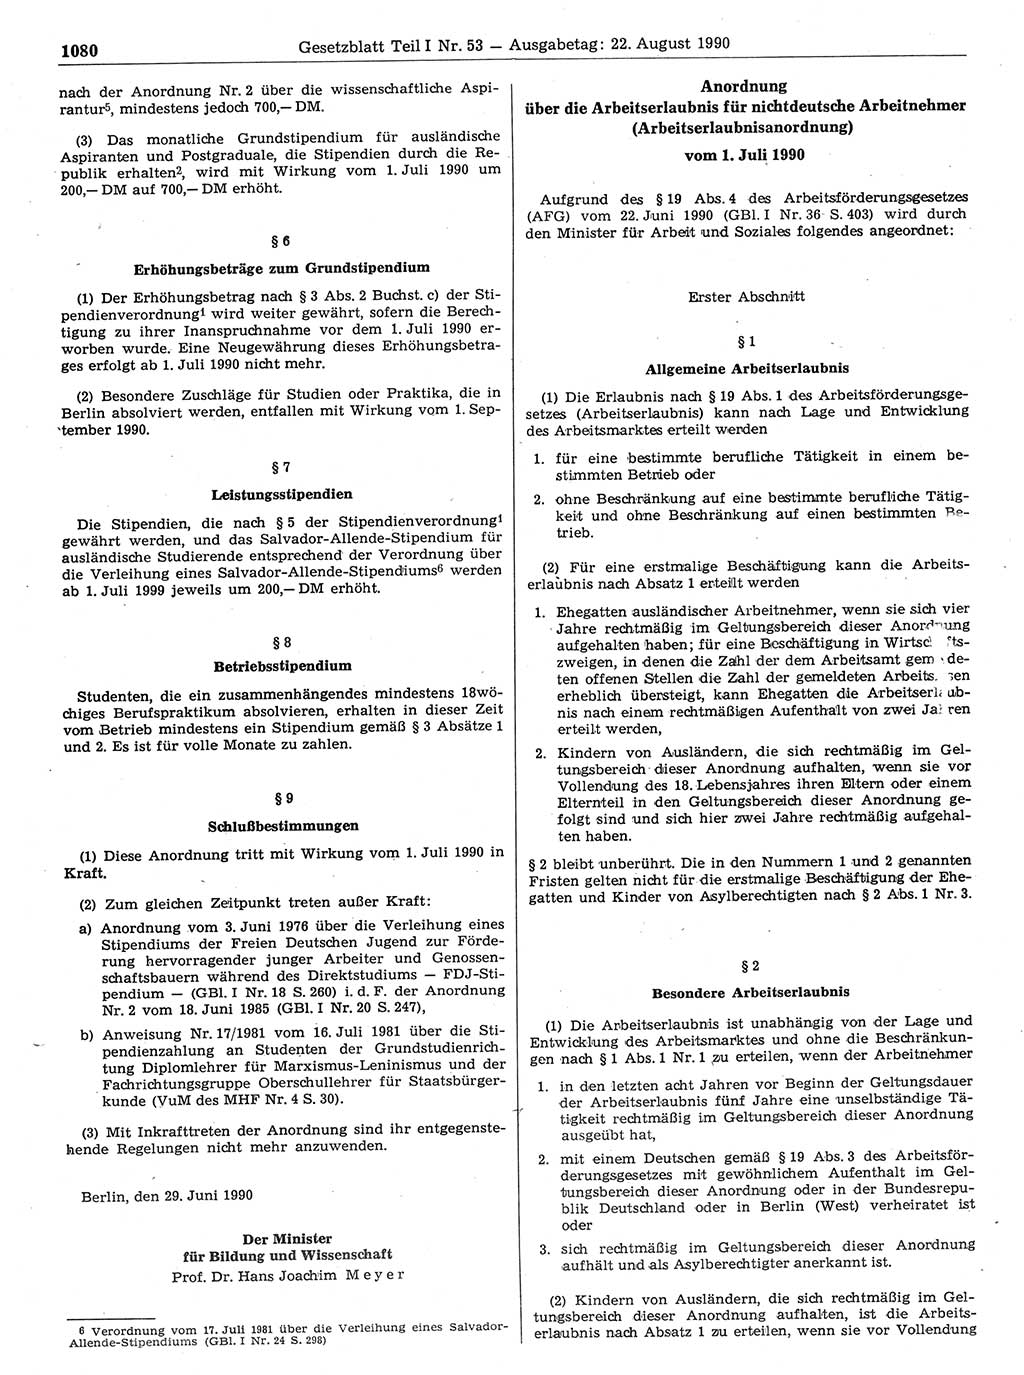 Gesetzblatt (GBl.) der Deutschen Demokratischen Republik (DDR) Teil Ⅰ 1990, Seite 1080 (GBl. DDR Ⅰ 1990, S. 1080)